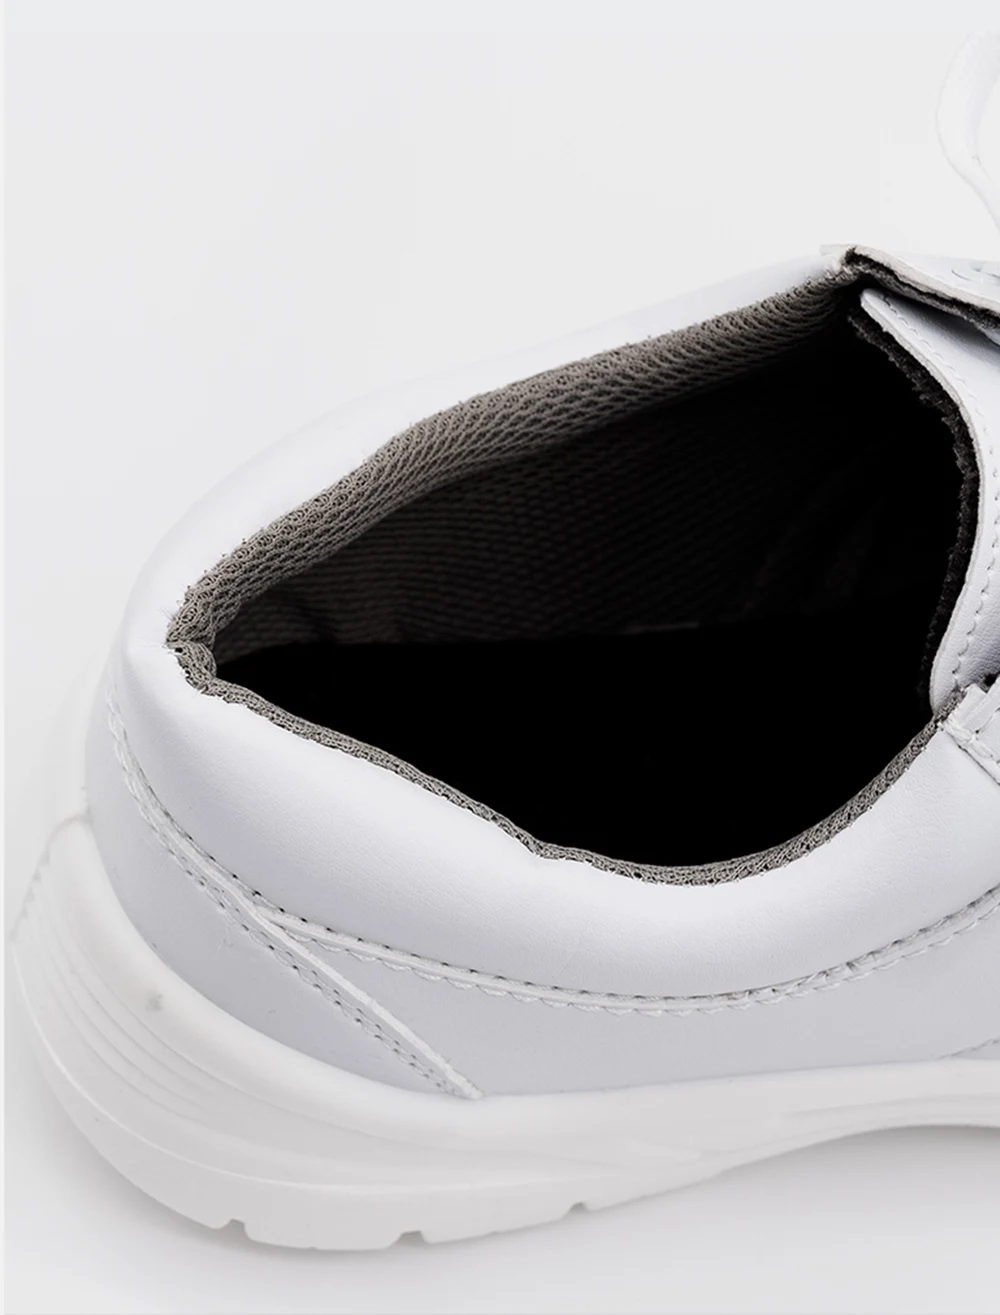 Abeso Для мужчин Сталь Носок, рабочая безопасная обувь Легкий дышащий материал Светоотражающие Повседневное тапки A8621A